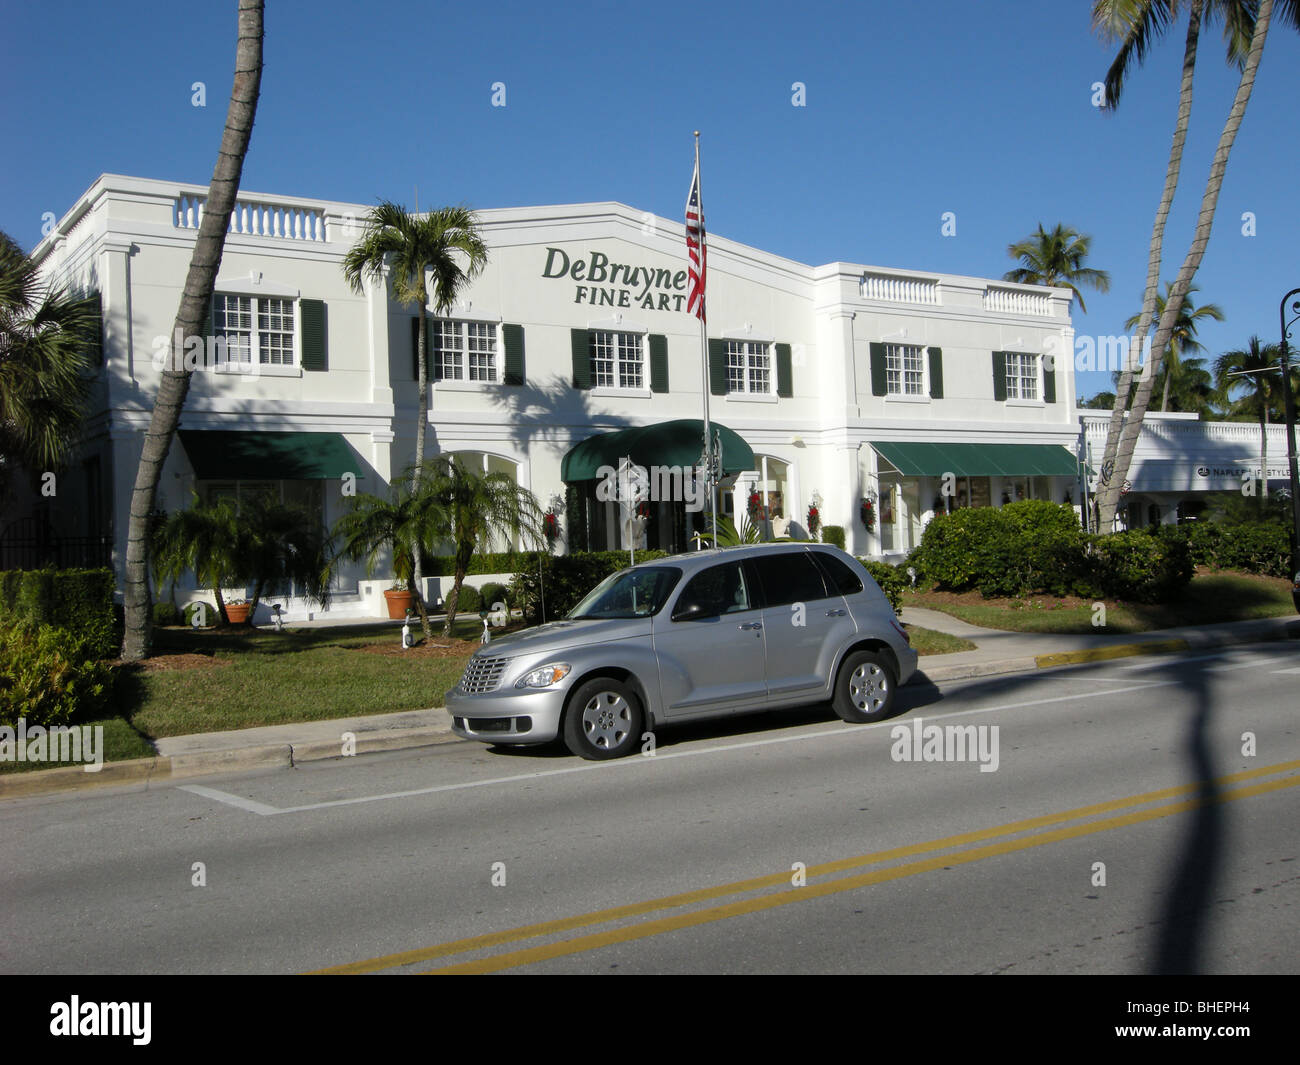 2009 Chrysler Cruiser en face de De Bruyne Fine Art Gallery dans le quartier historique de Naples Florida USA Banque D'Images